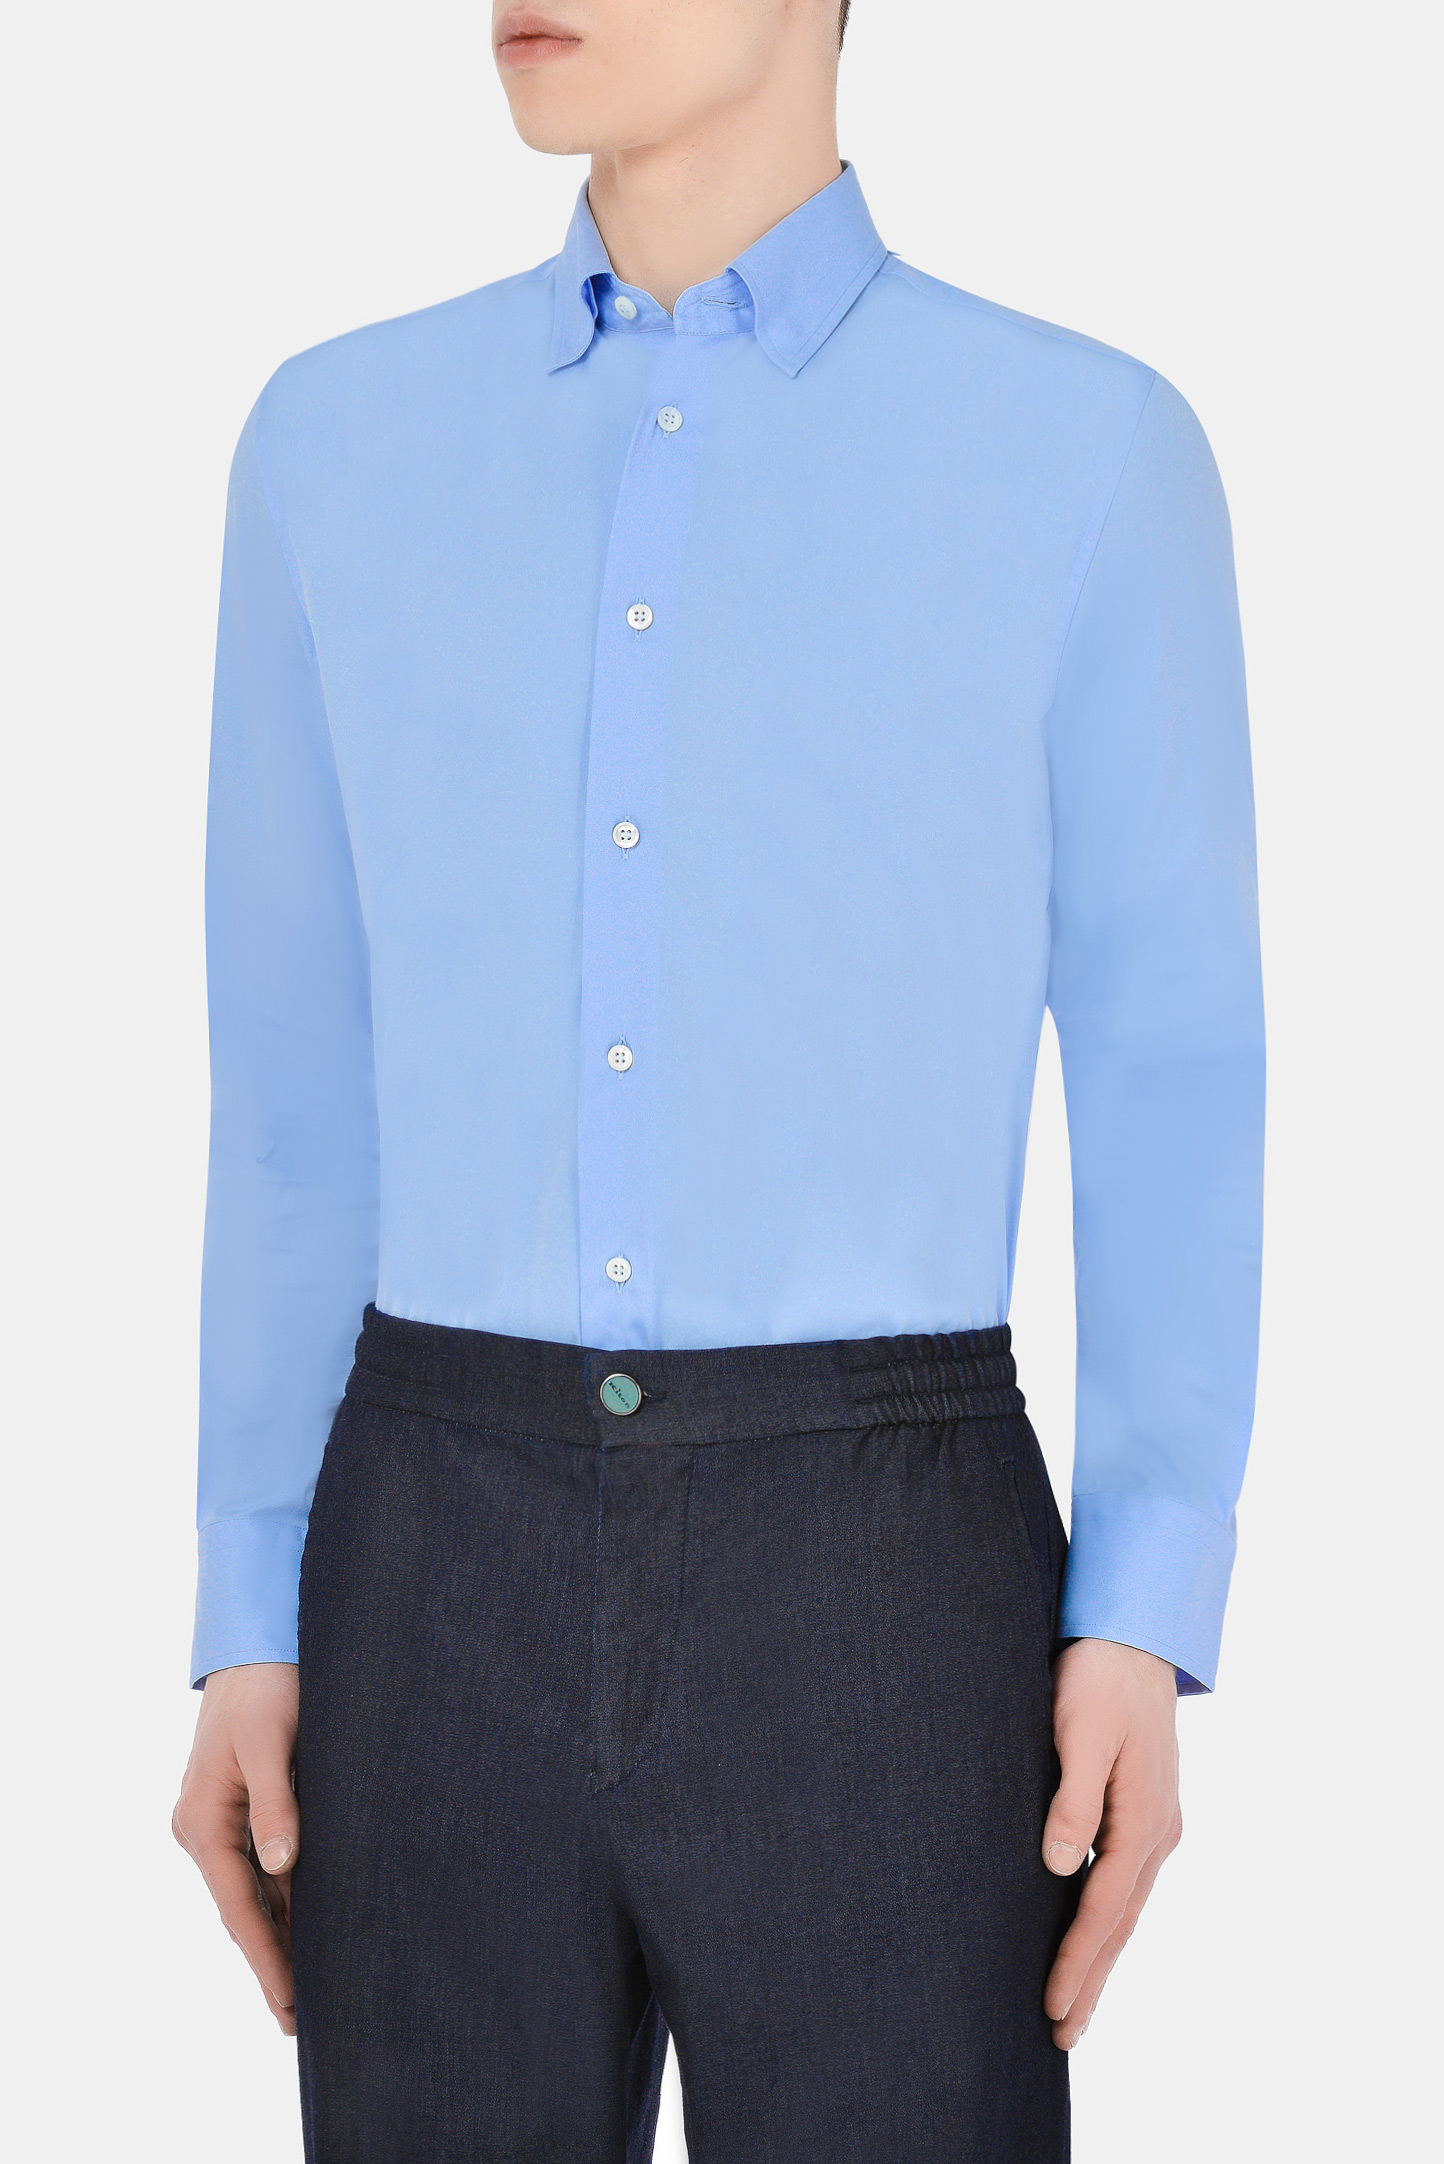 Рубашка BRIONI SCCA0L O8010, цвет: Голубой, Мужской